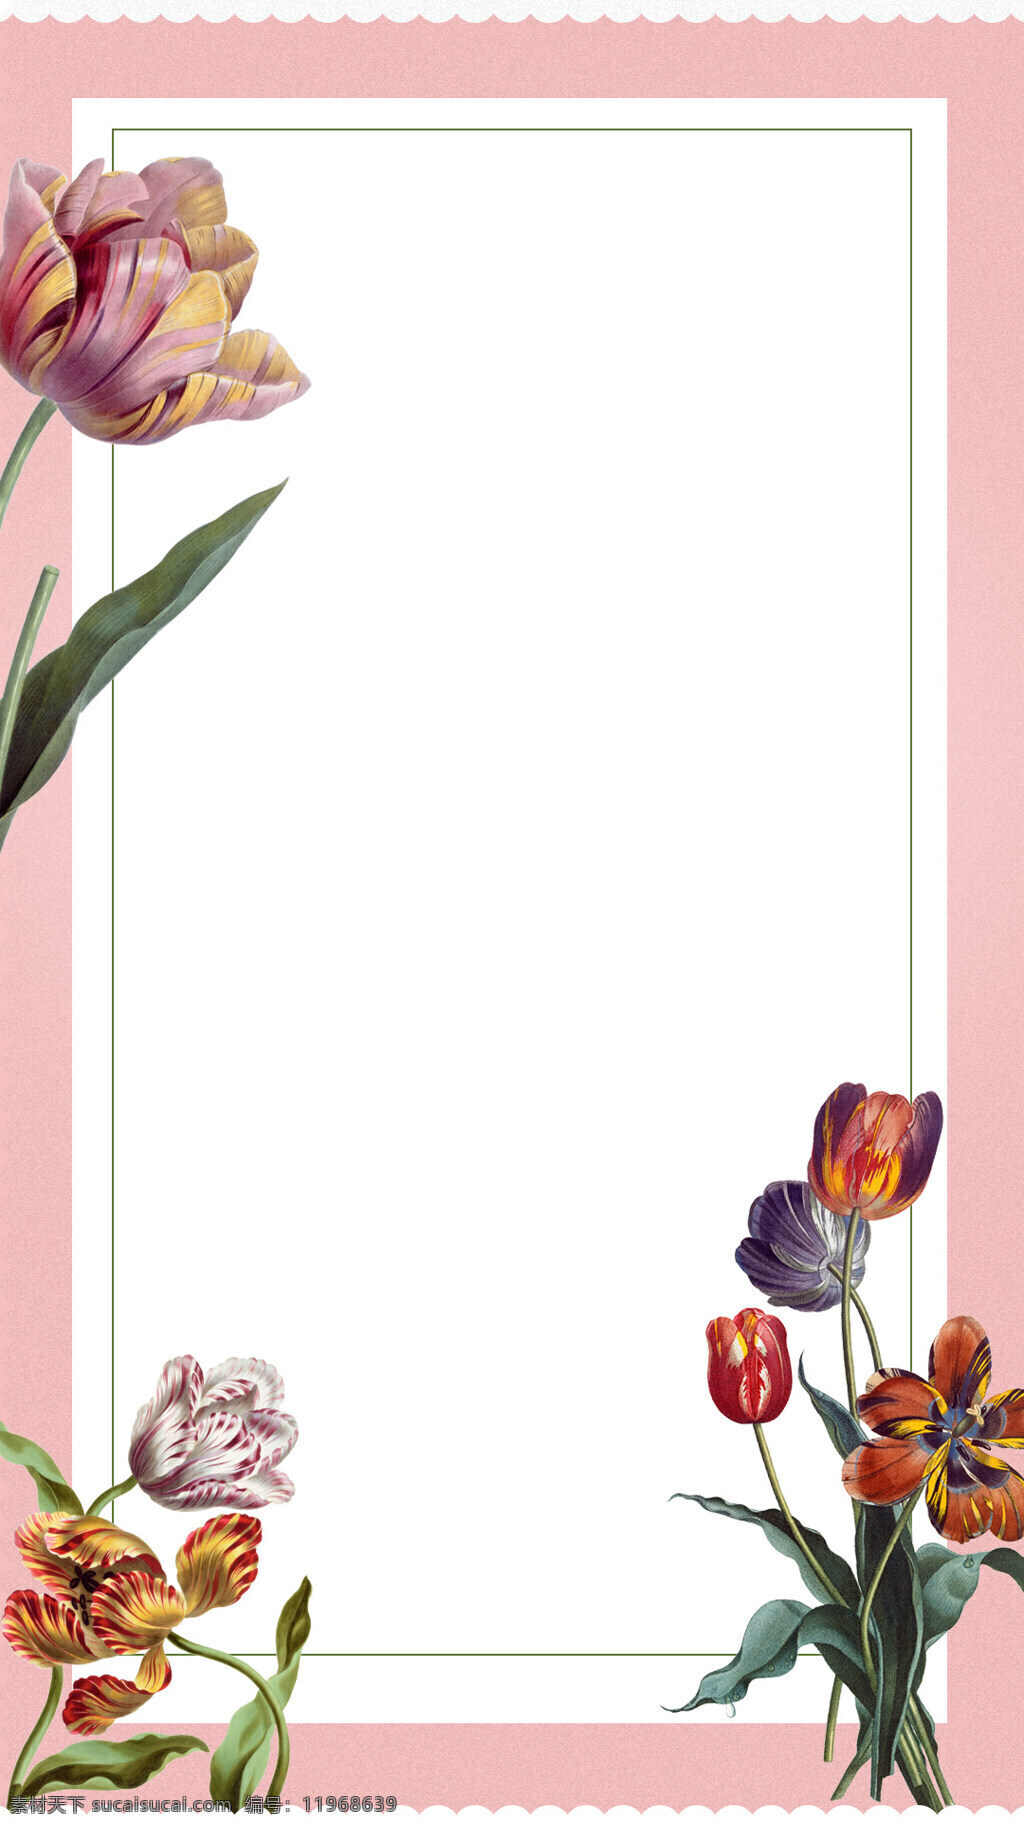 彩色 花朵 粉底 边框 h5 背景 简约 粉底边框 彩色花朵 海报 h5背景